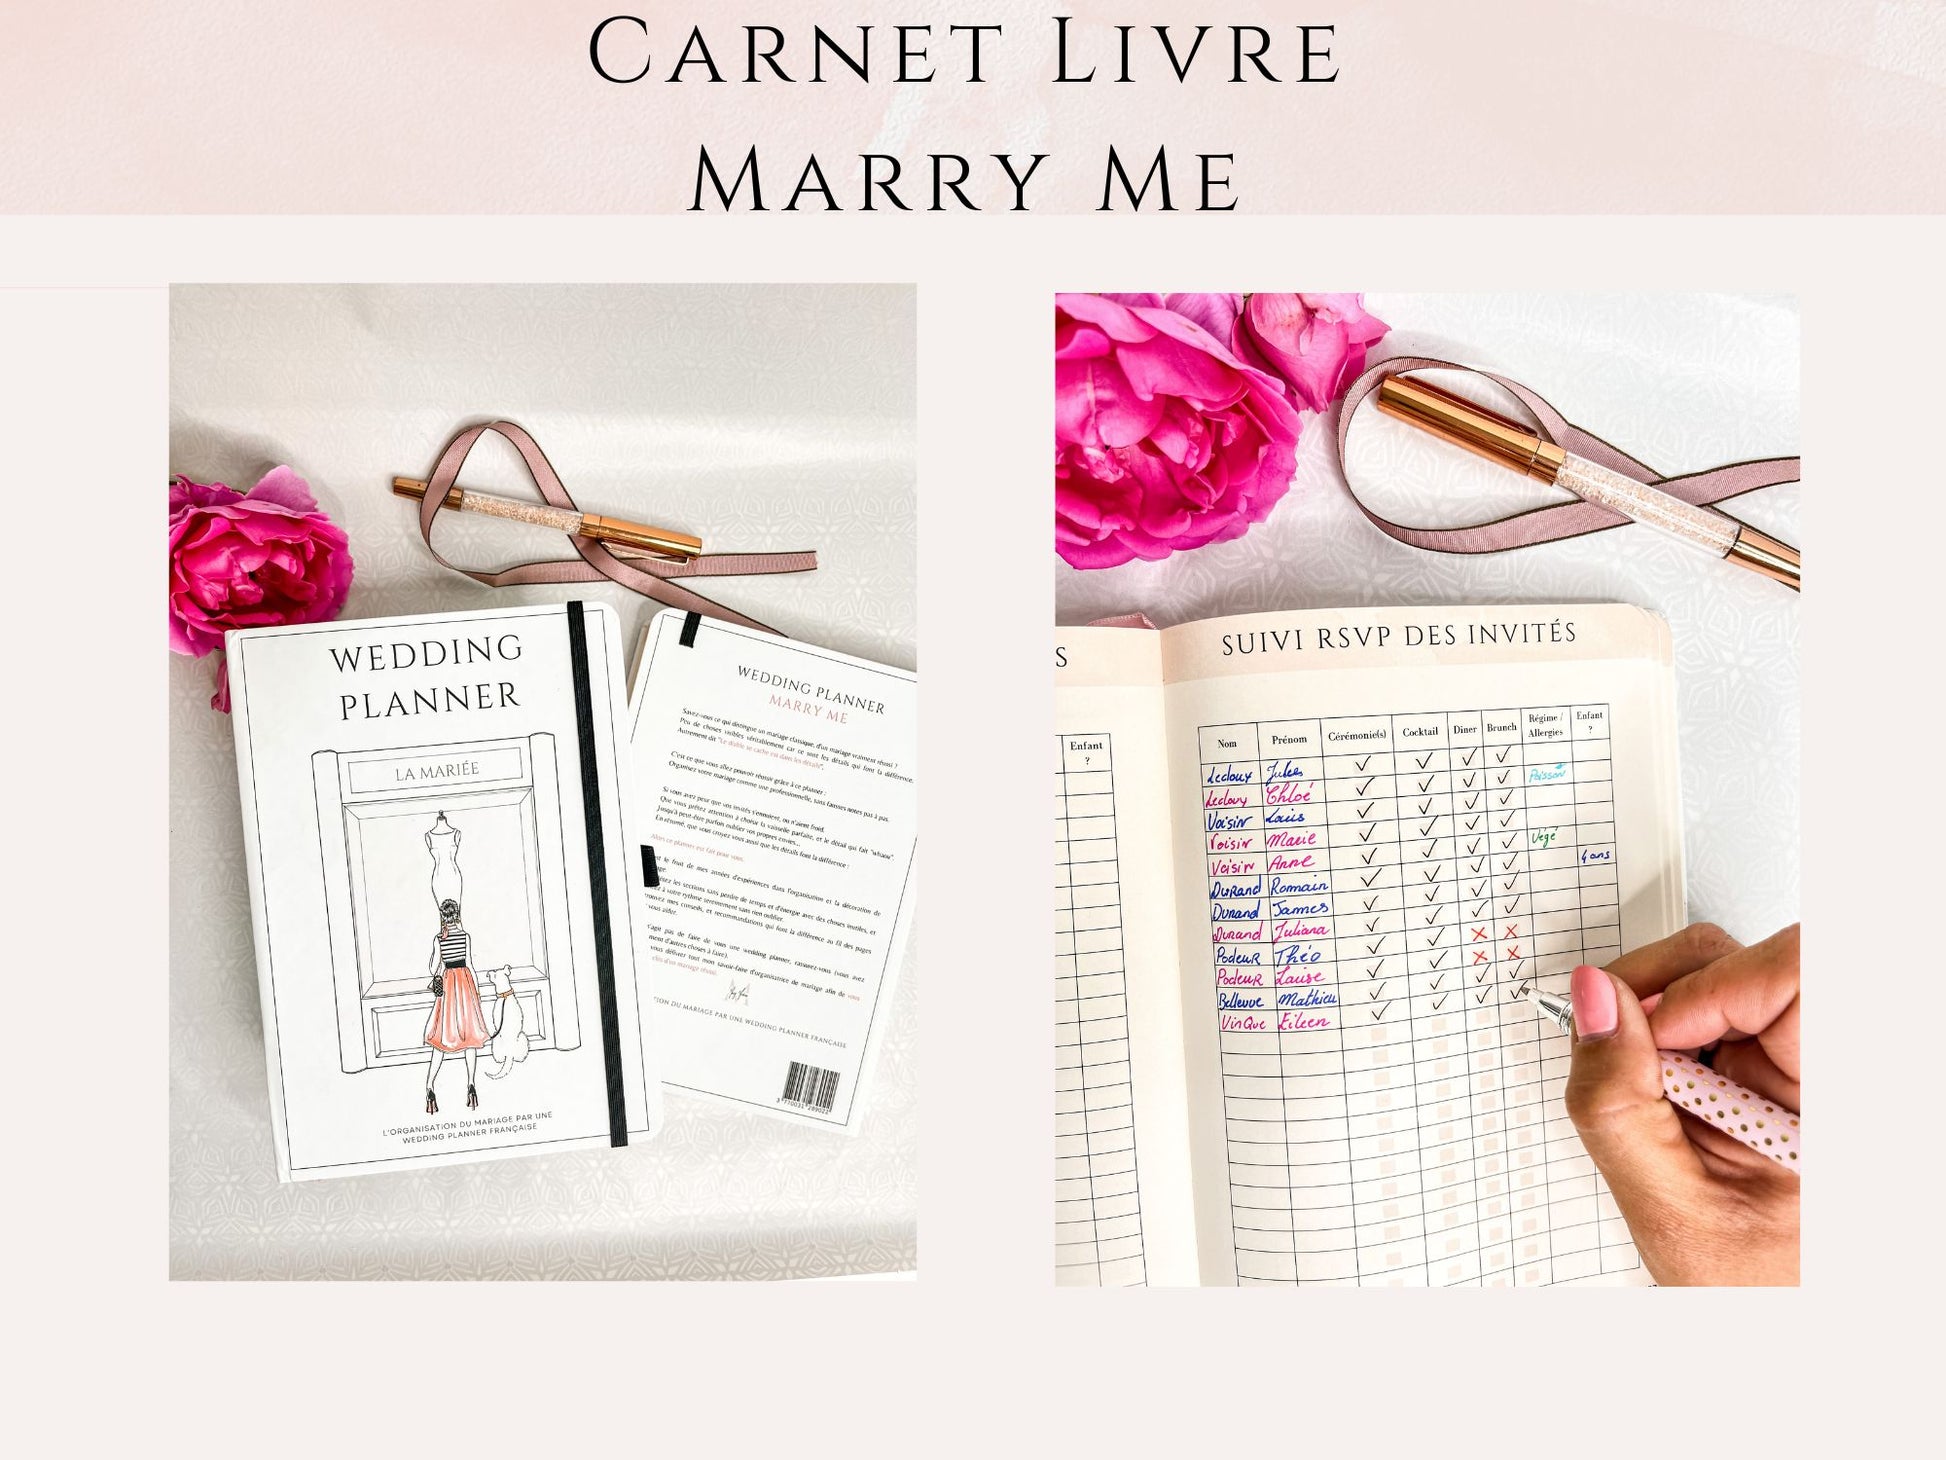 Carnet livre Marry Me - Organisateur de mariage – Mary McNess